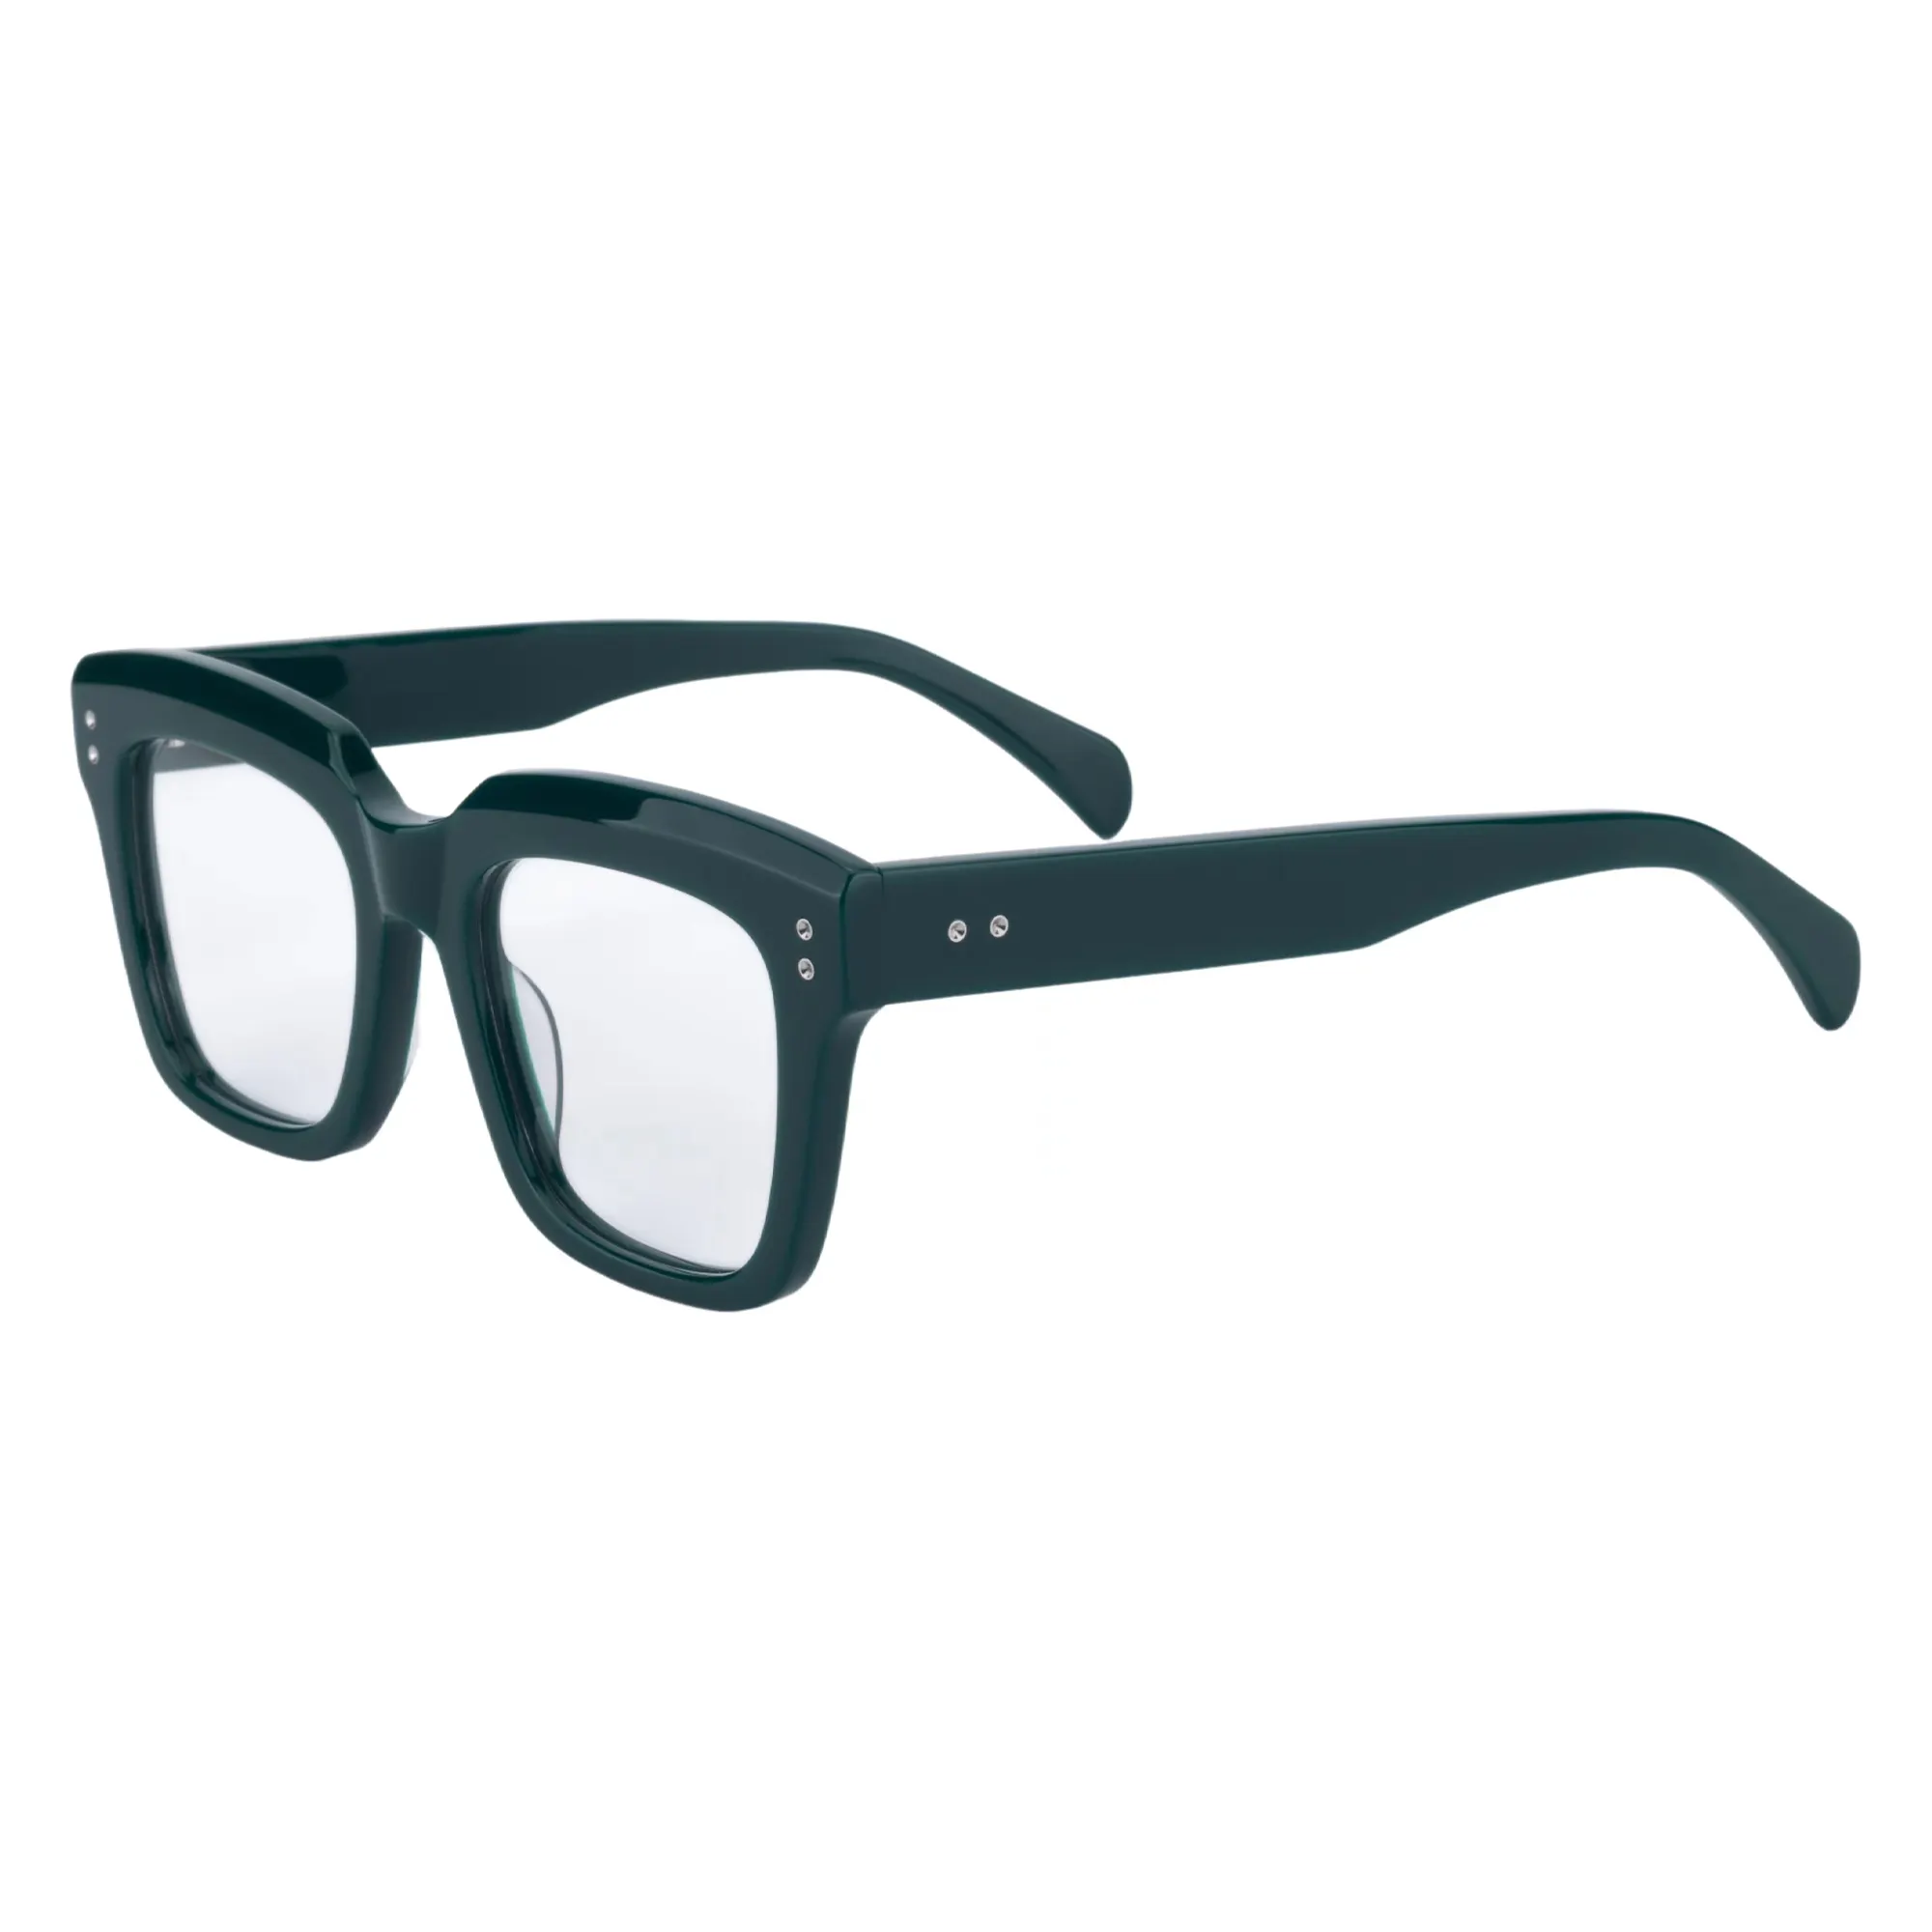 İtalyan tasarımcı el yapımı kare erkekler gözlük Retro asetat kadın gözlükler Vintage optik çerçeve Steampunk reçete gözlük